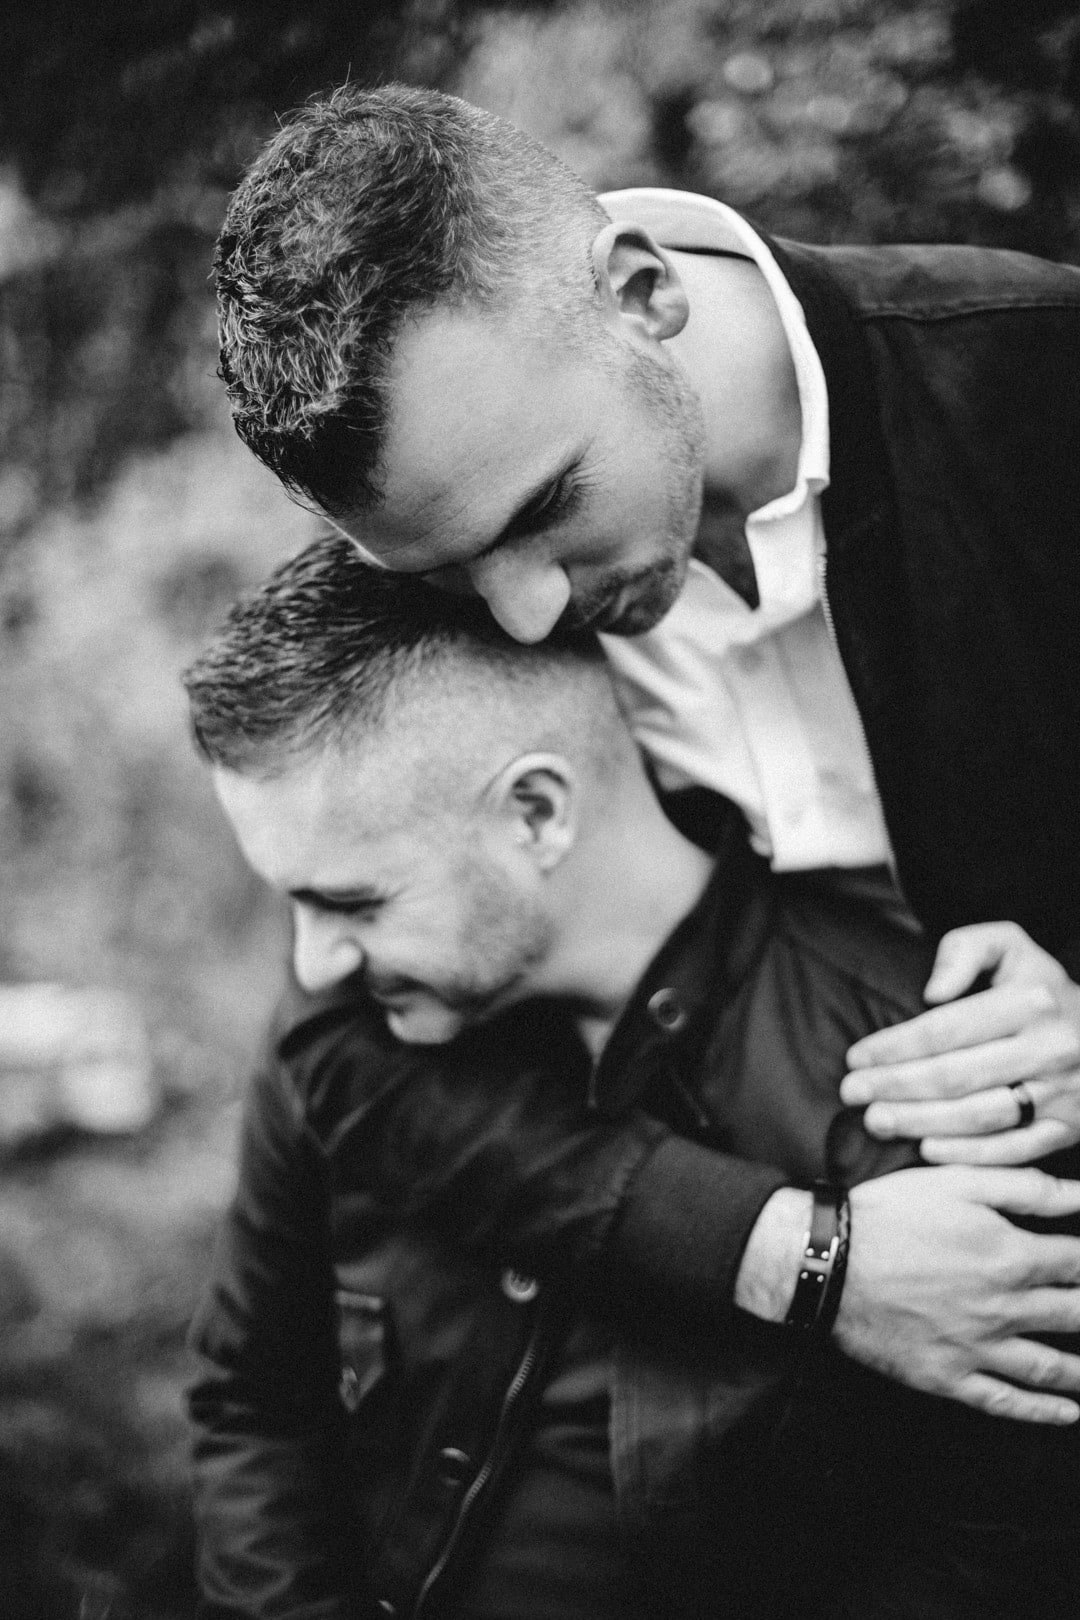 couple d'hommes gays qui s'enlacent durant une séance photo à metz